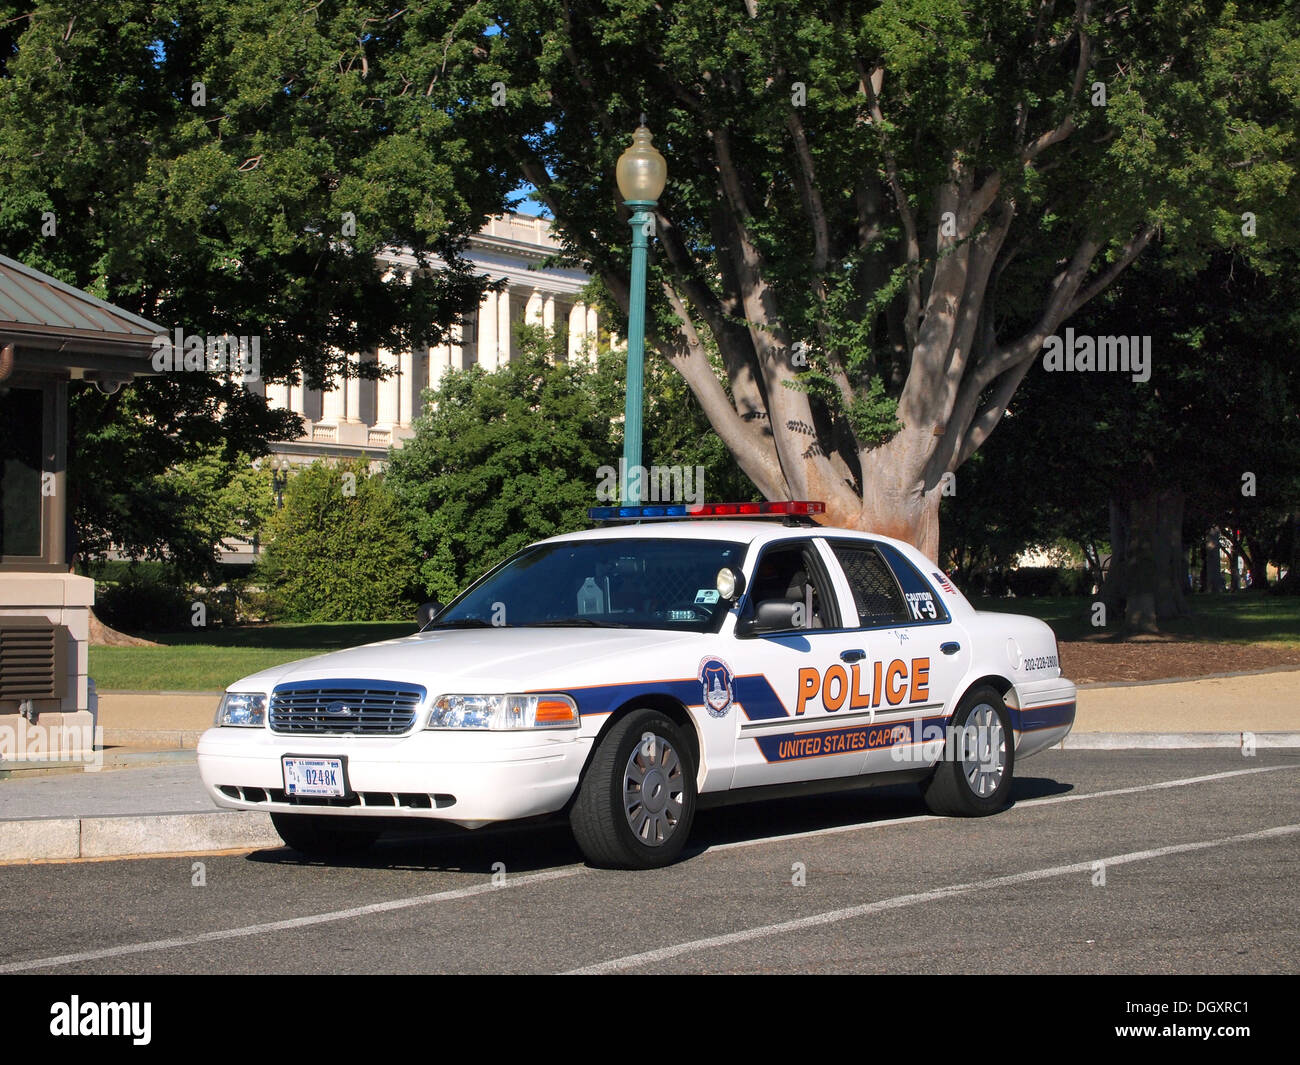 Capitolio de los Estados Unidos departamento de policía K-9 vehículo, Washington DC, EE.UU. Foto de stock